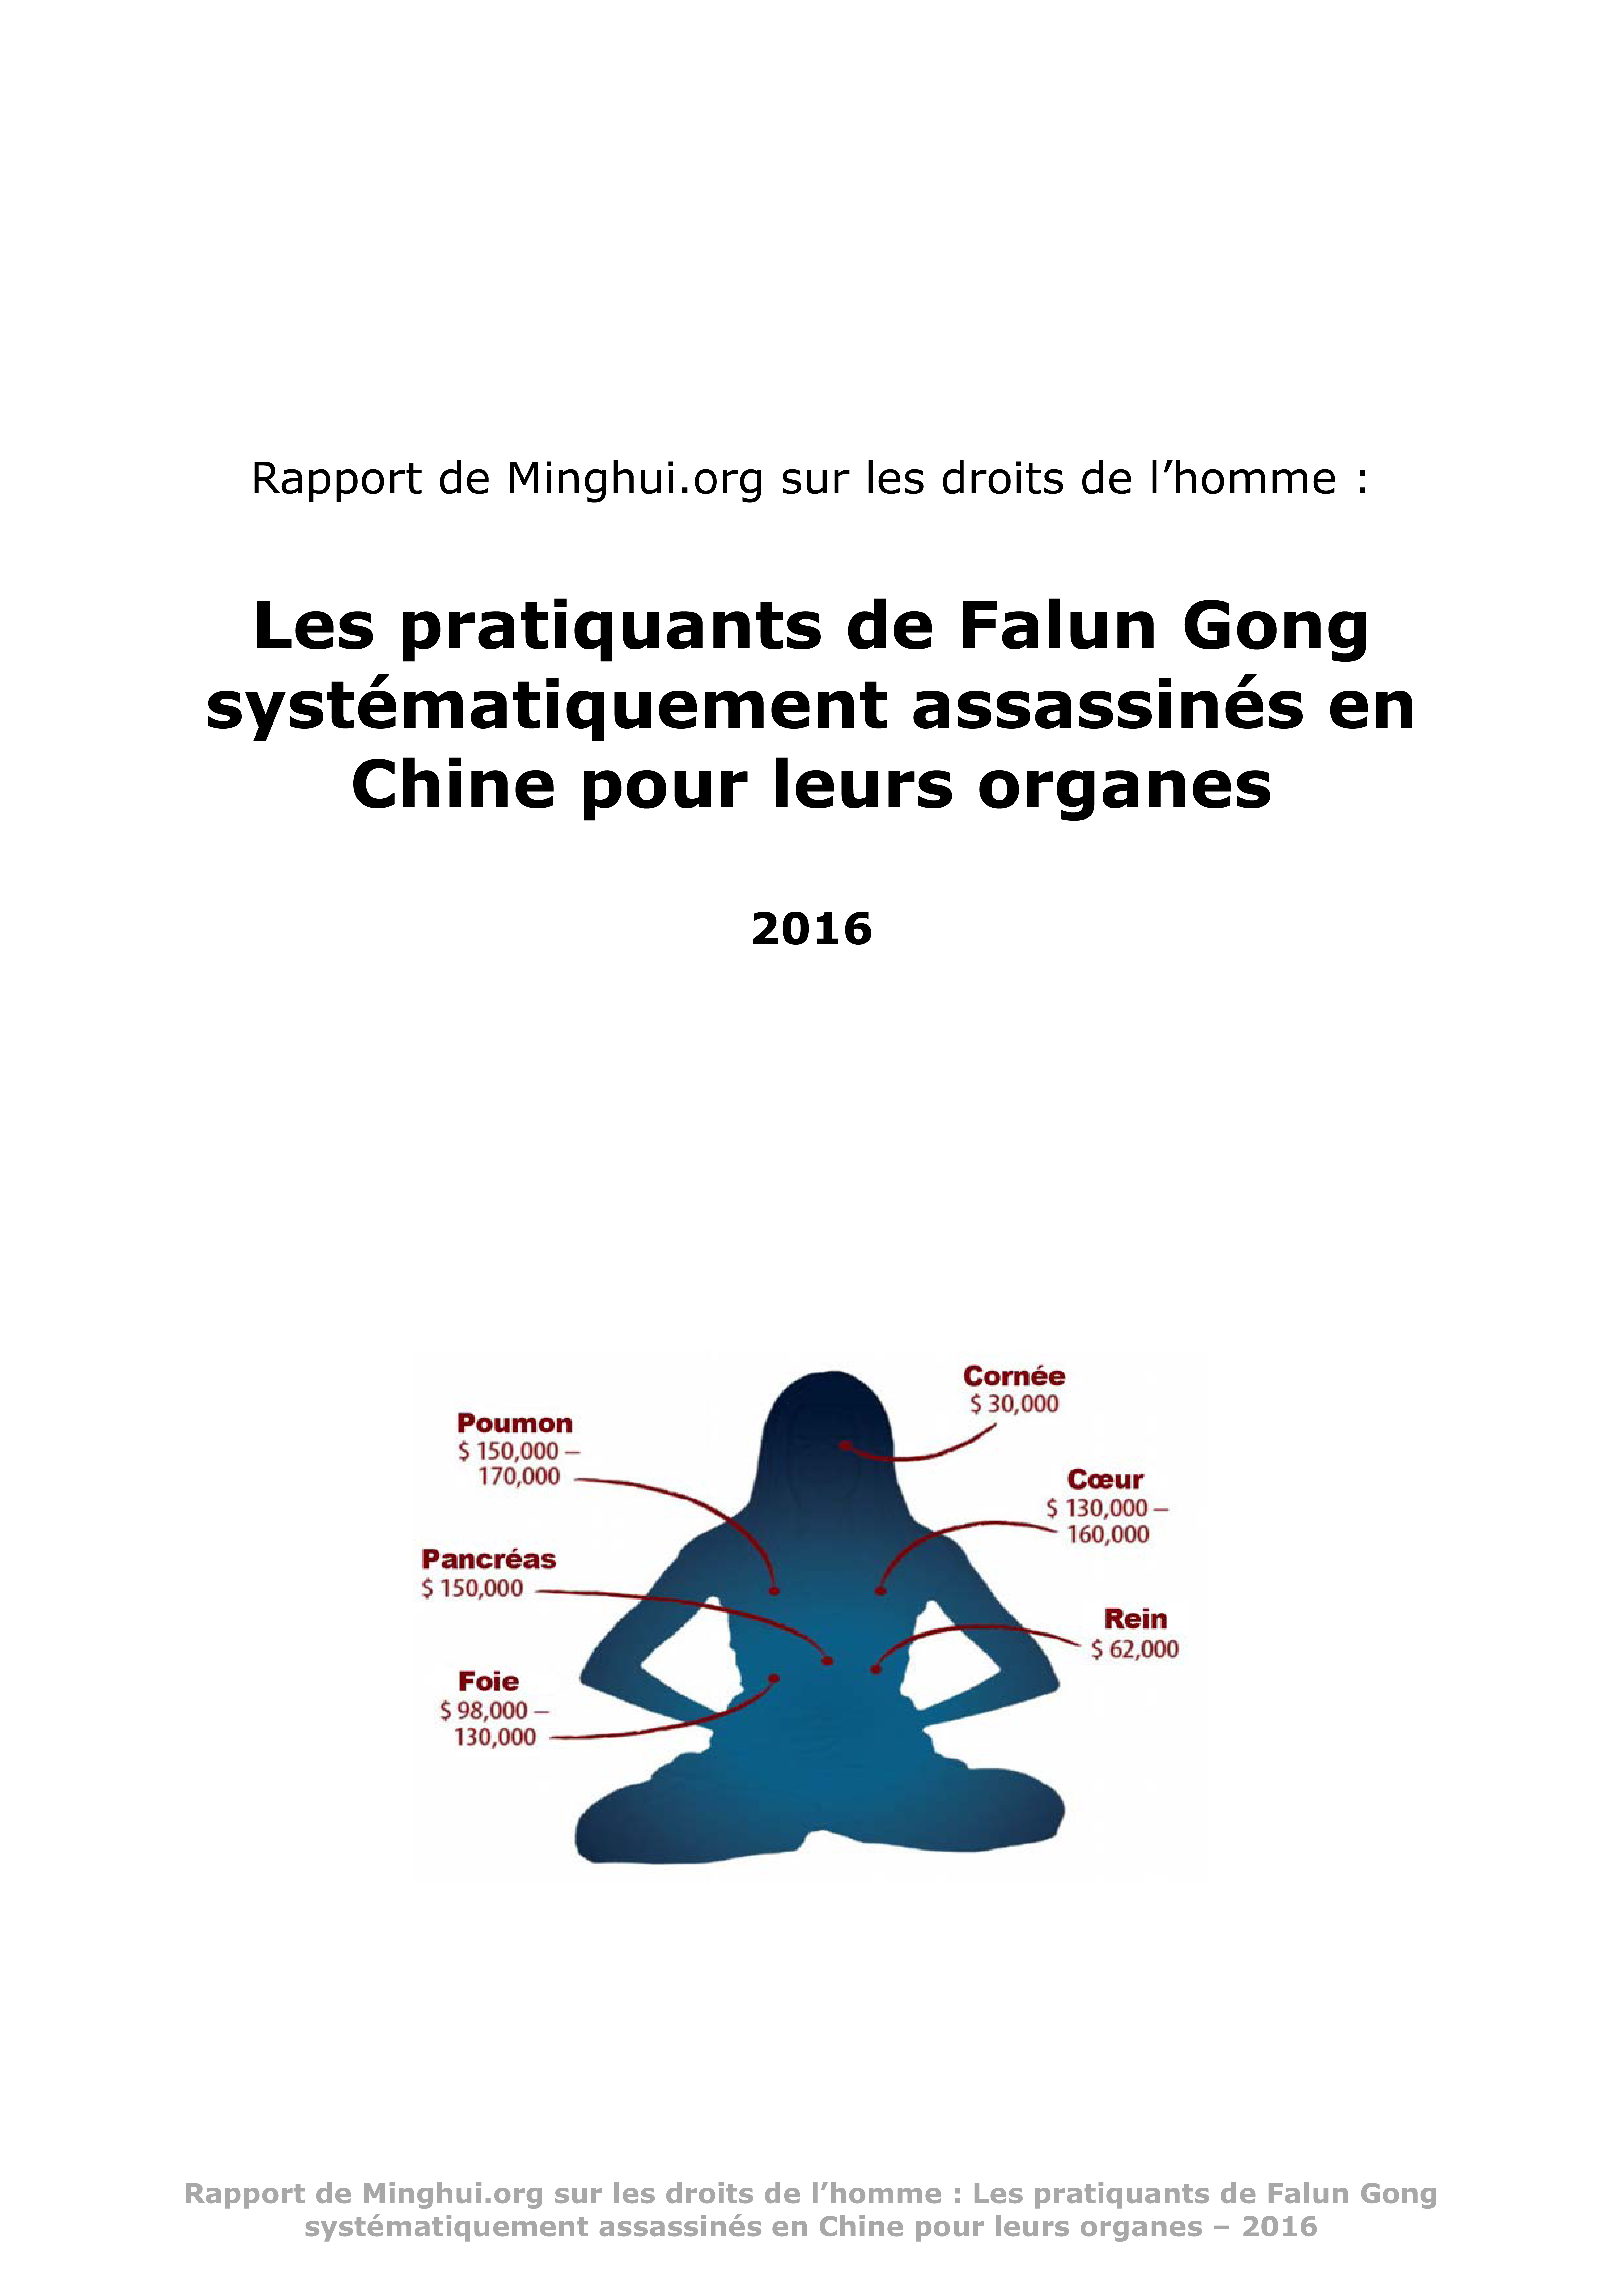 https://fr.minghui.org/media/article_images/2018/0208/E157028_Rapport_Minghui_2016_Fr-Couverture.jpg